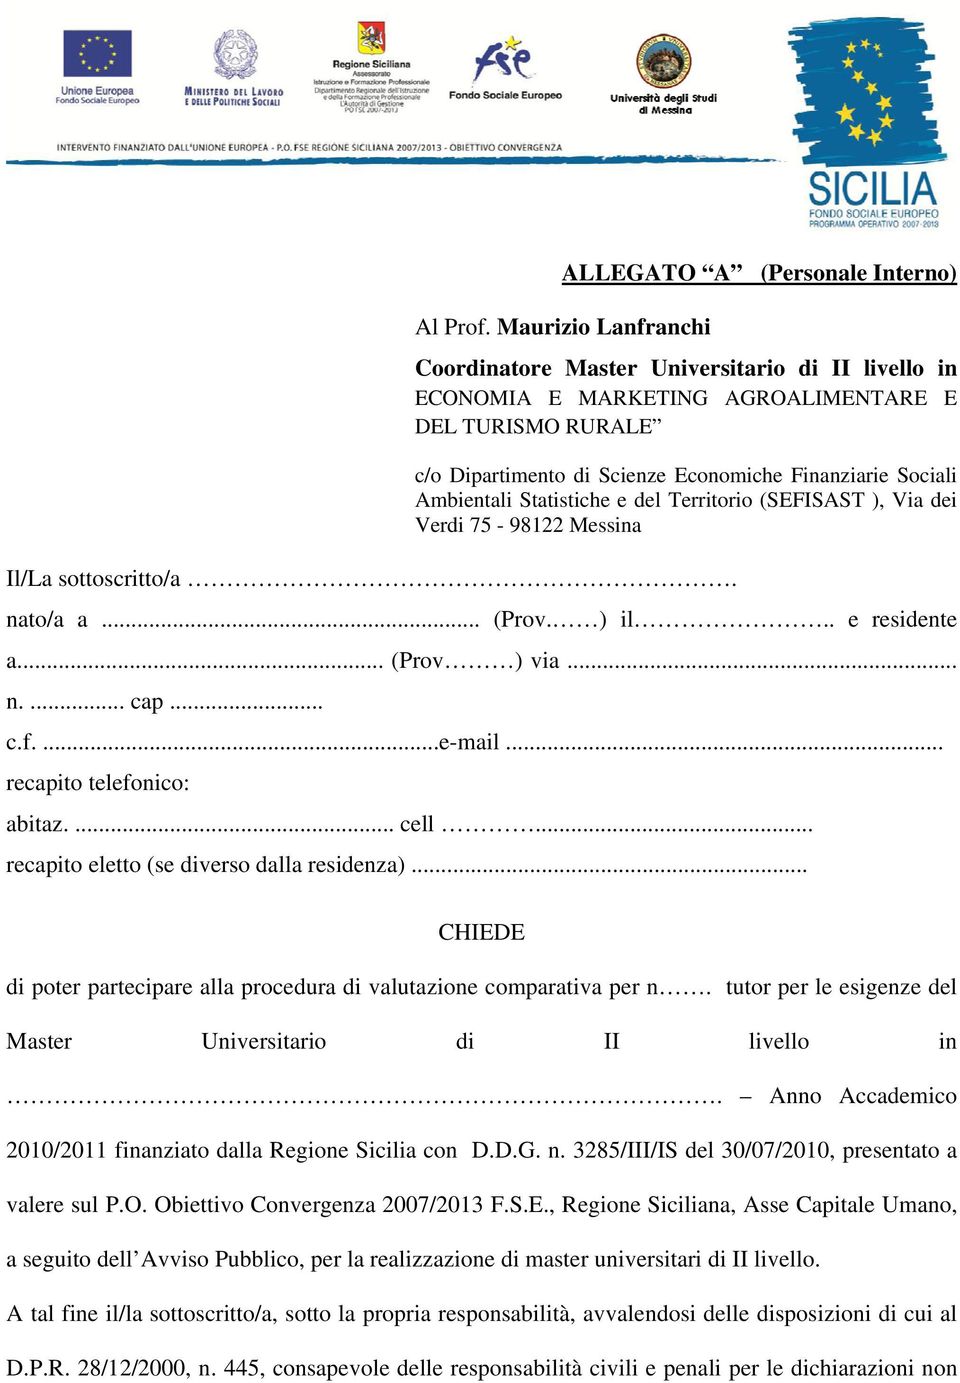 Statistiche e del Territorio (SEFISAST ), Via dei Verdi 75-98122 Messina Il/La sottoscritto/a. nato/a a... (Prov. ) il.. e residente a... (Prov ) via... n.... cap... c.f....e-mail.